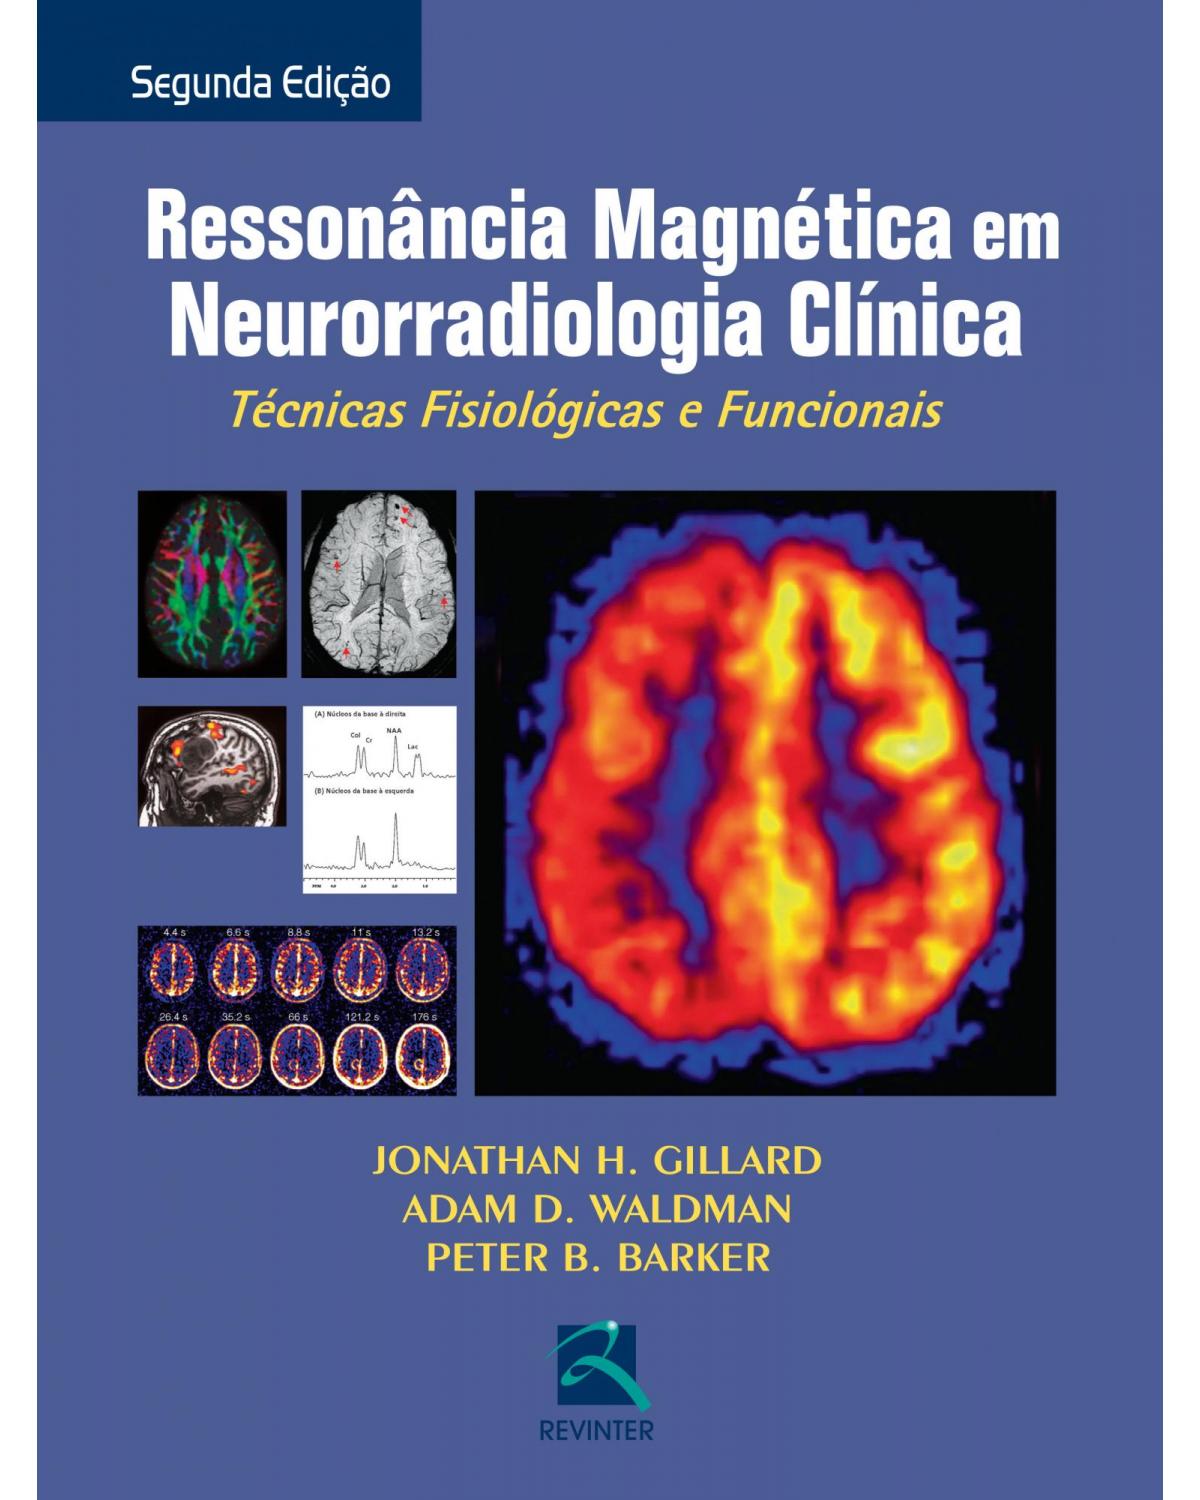 Ressonância magnética em neurorradiologia clínica - técnicas fisiológicas e funcionais - 2ª Edição | 2014